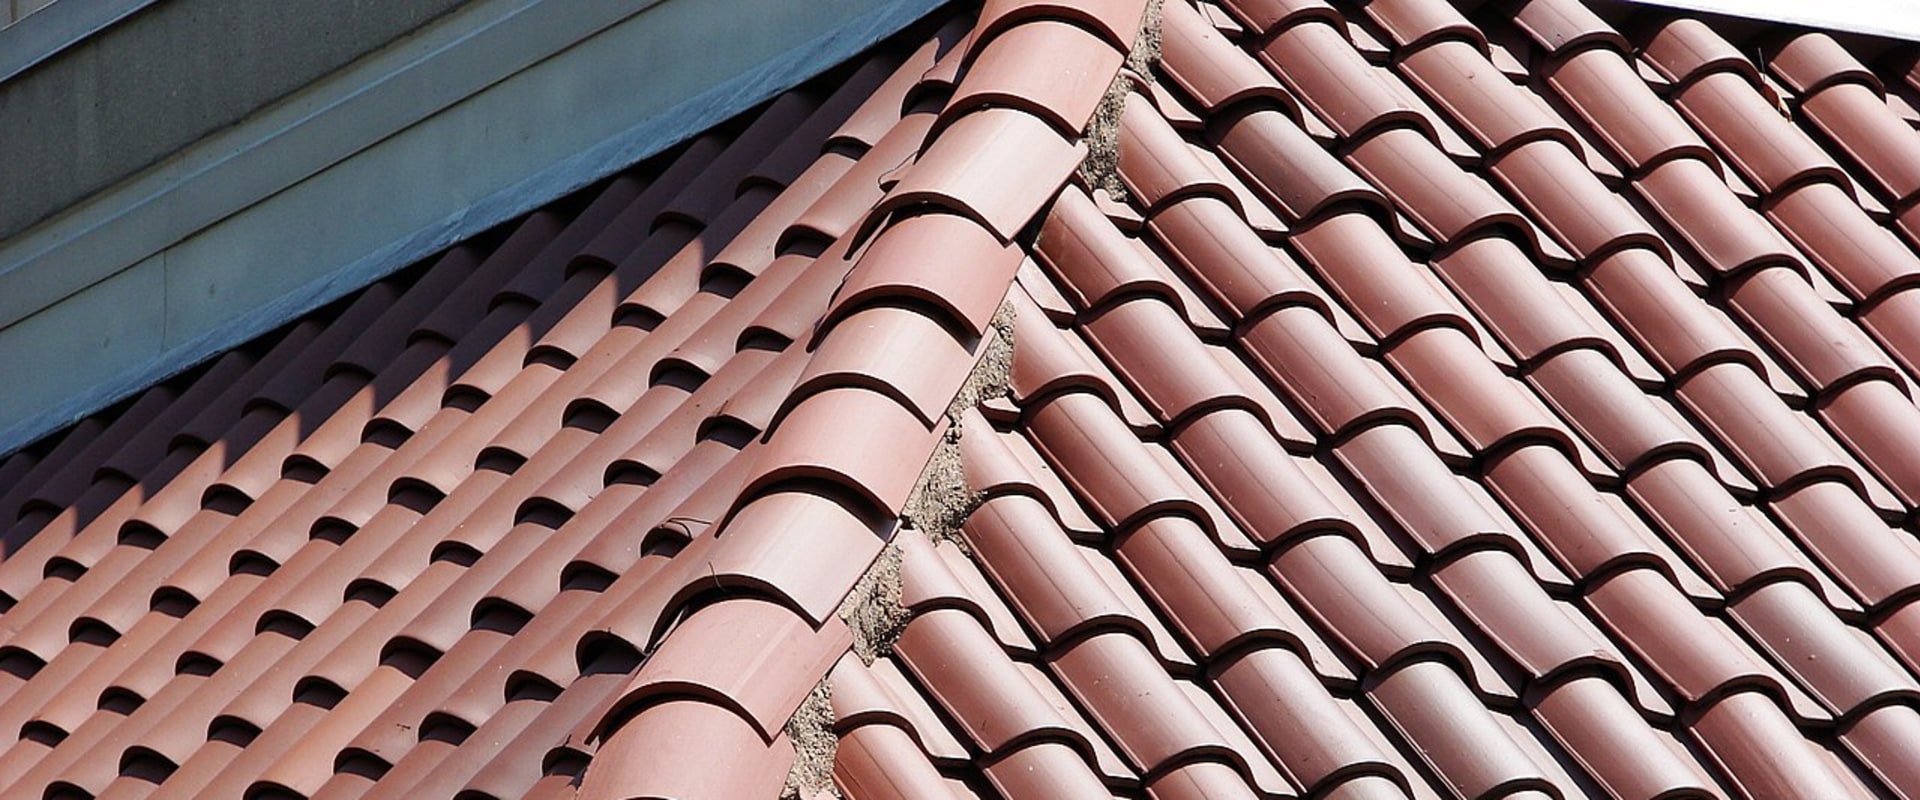 Waar zijn platte dakpannen van gemaakt?